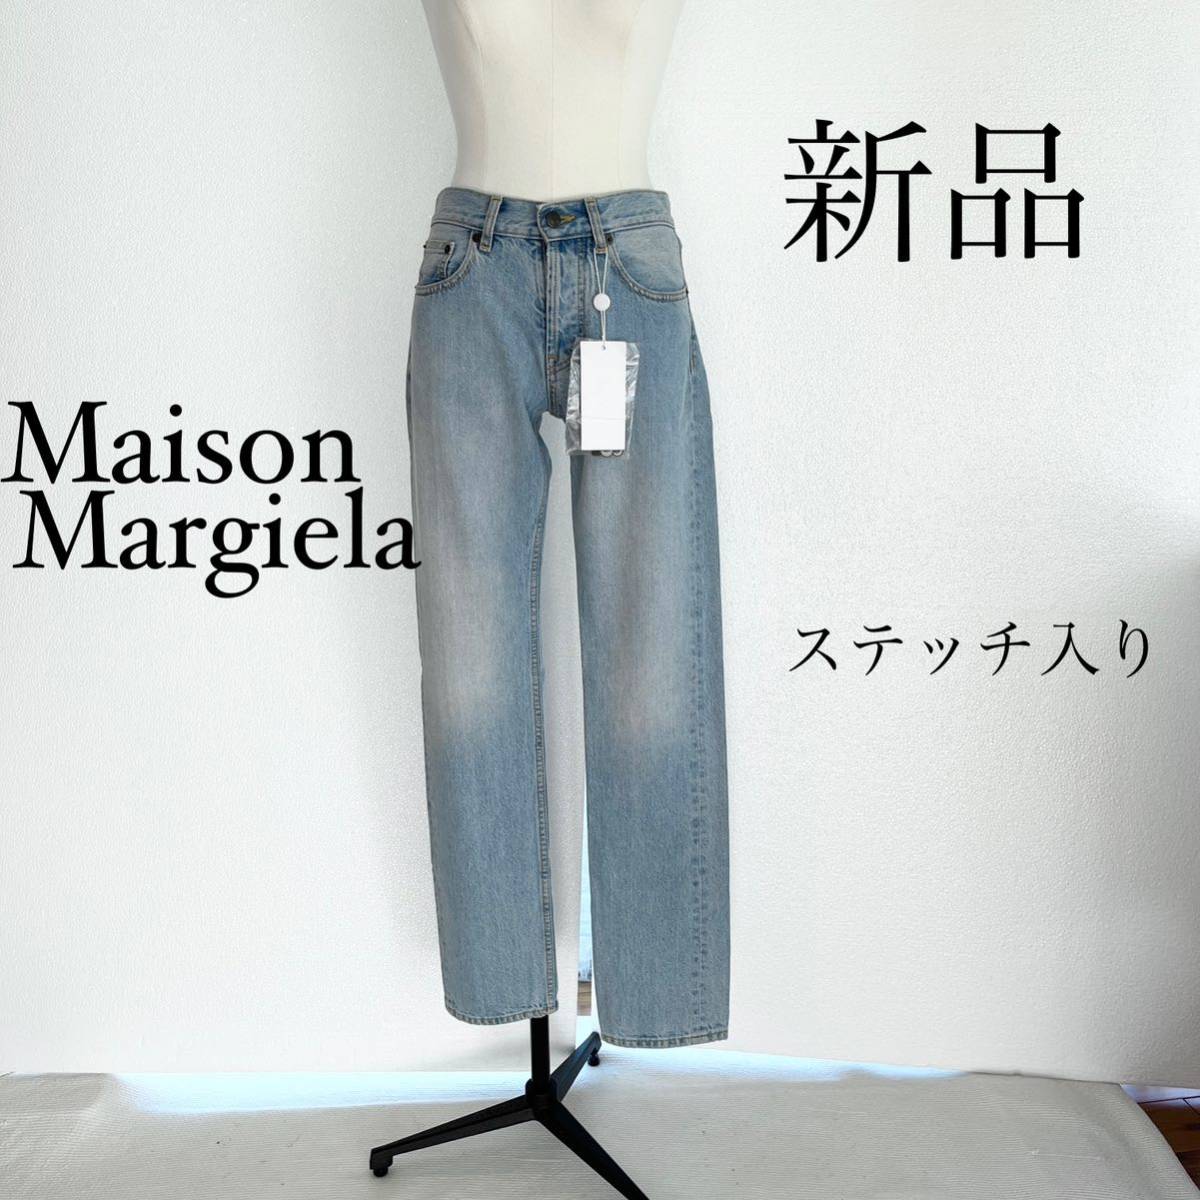 Maison Margiela マルジェラ ストレートデニム XSサイズ - ブランド別